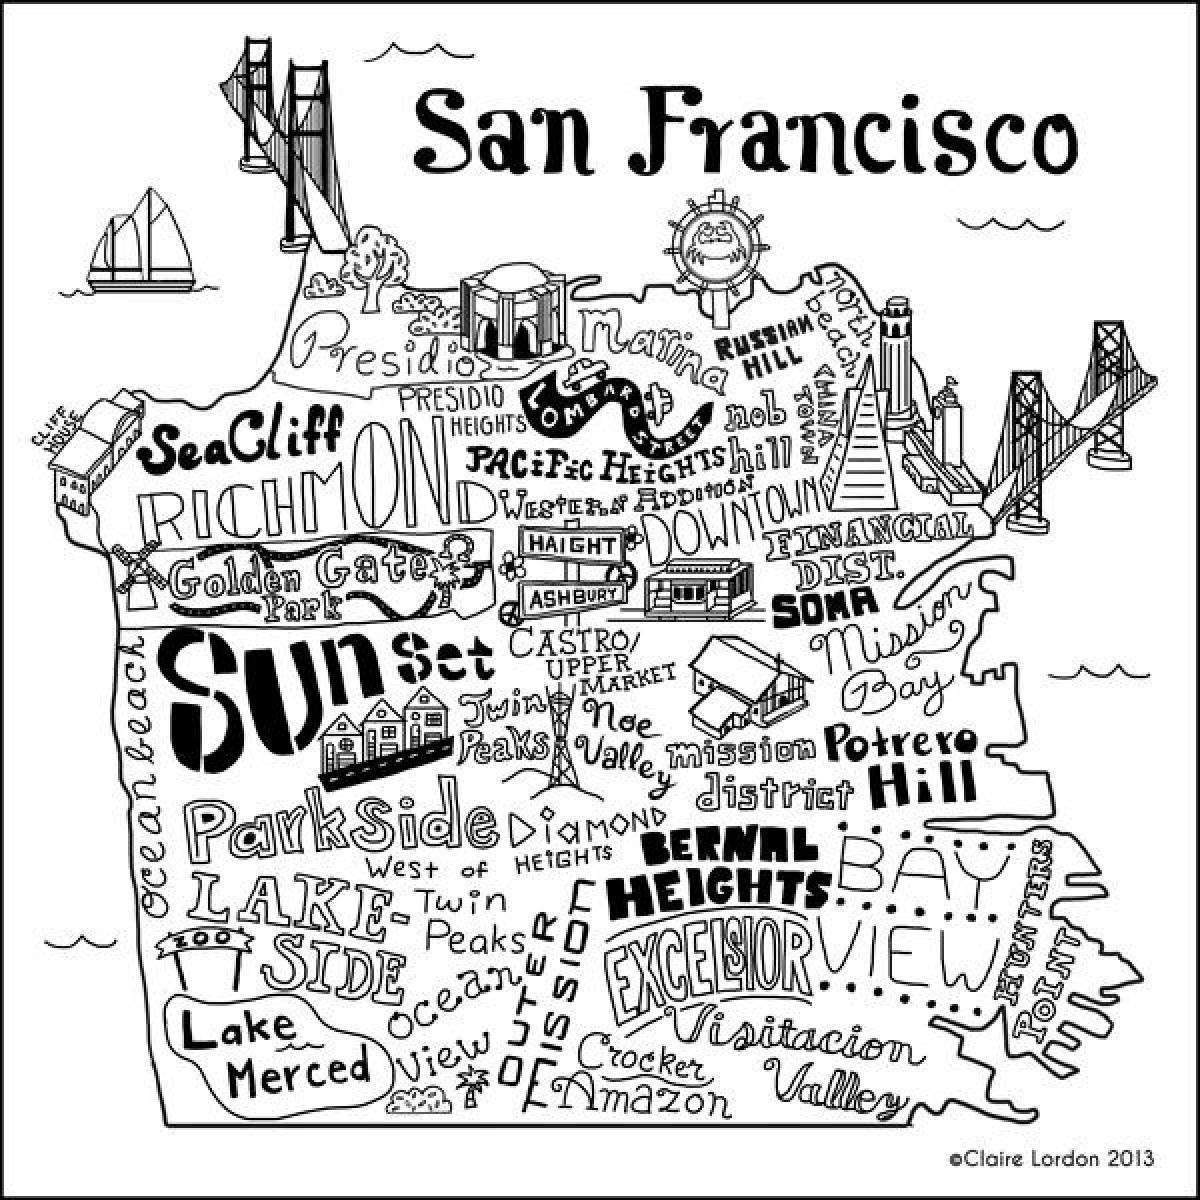 Peta kedai San Francisco